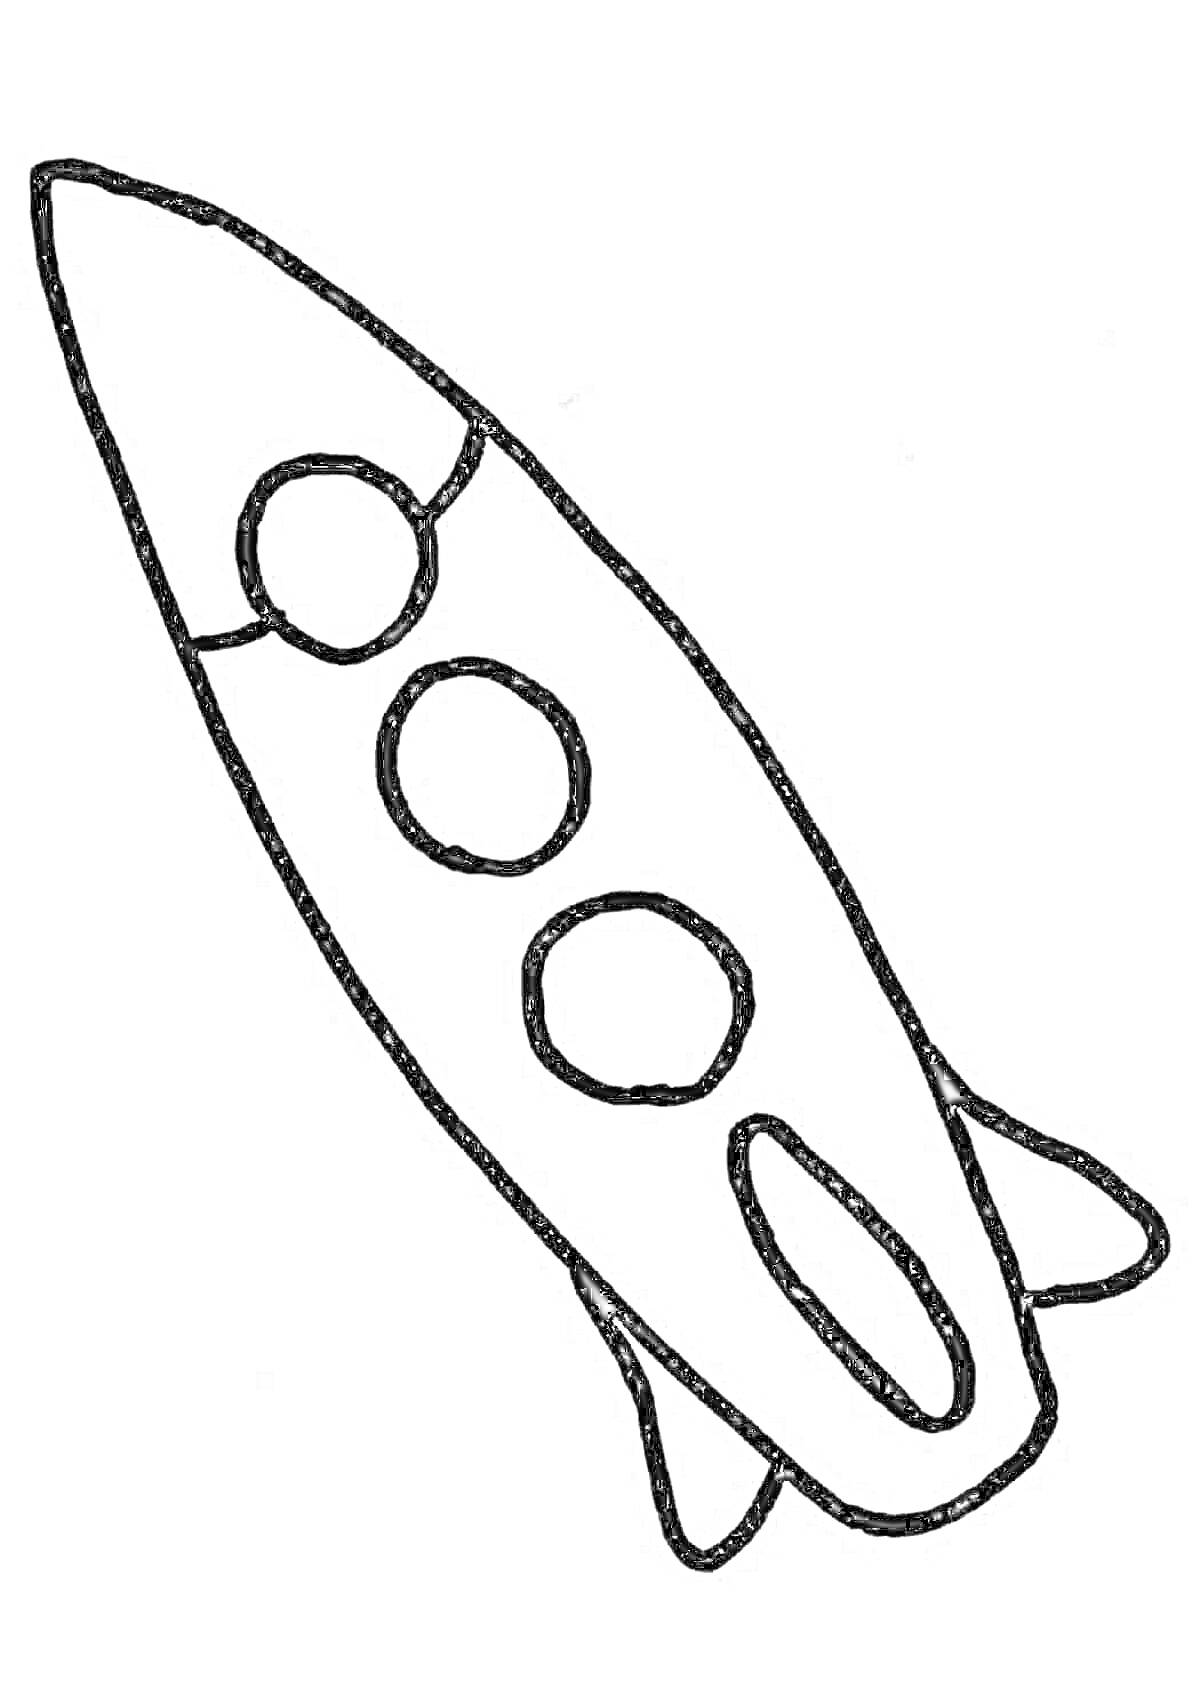 Раскраска Рисунок ракеты с тремя круглыми иллюминаторами и хвостовыми стабилизаторами